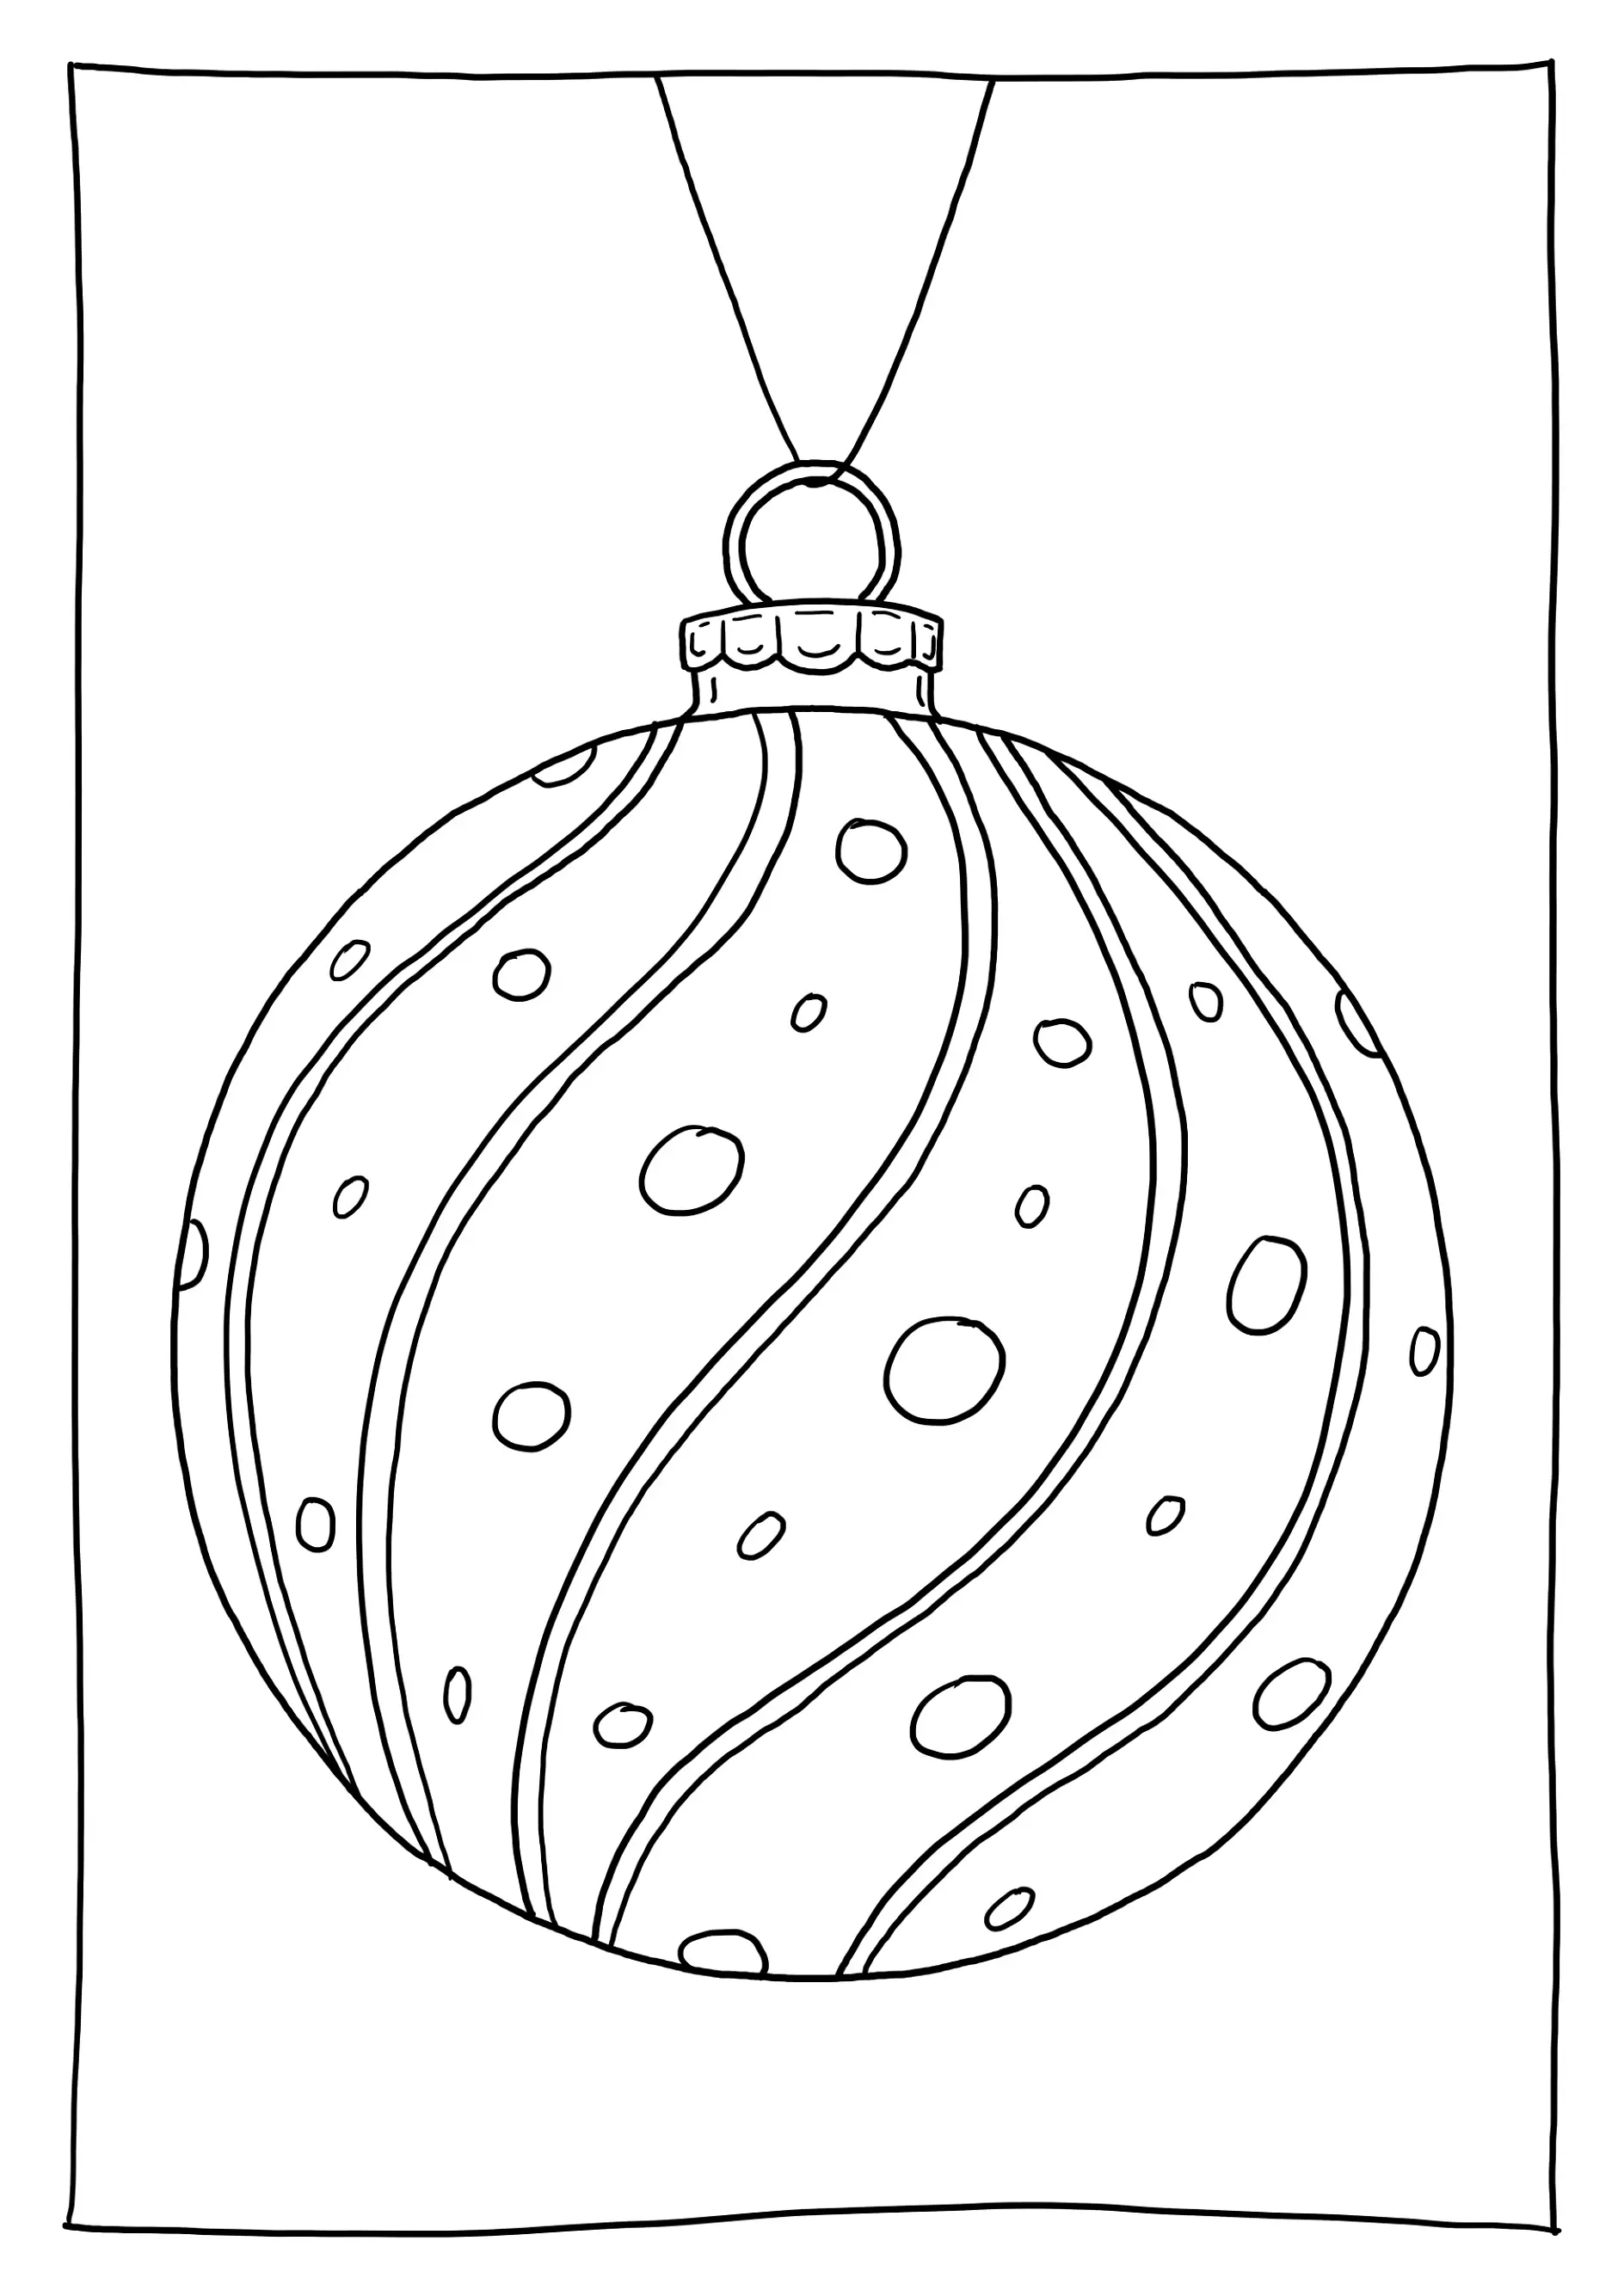 Ausmalbild Weihnachtskugel mit Streifen, Ornamenten, Schleife und Perlen